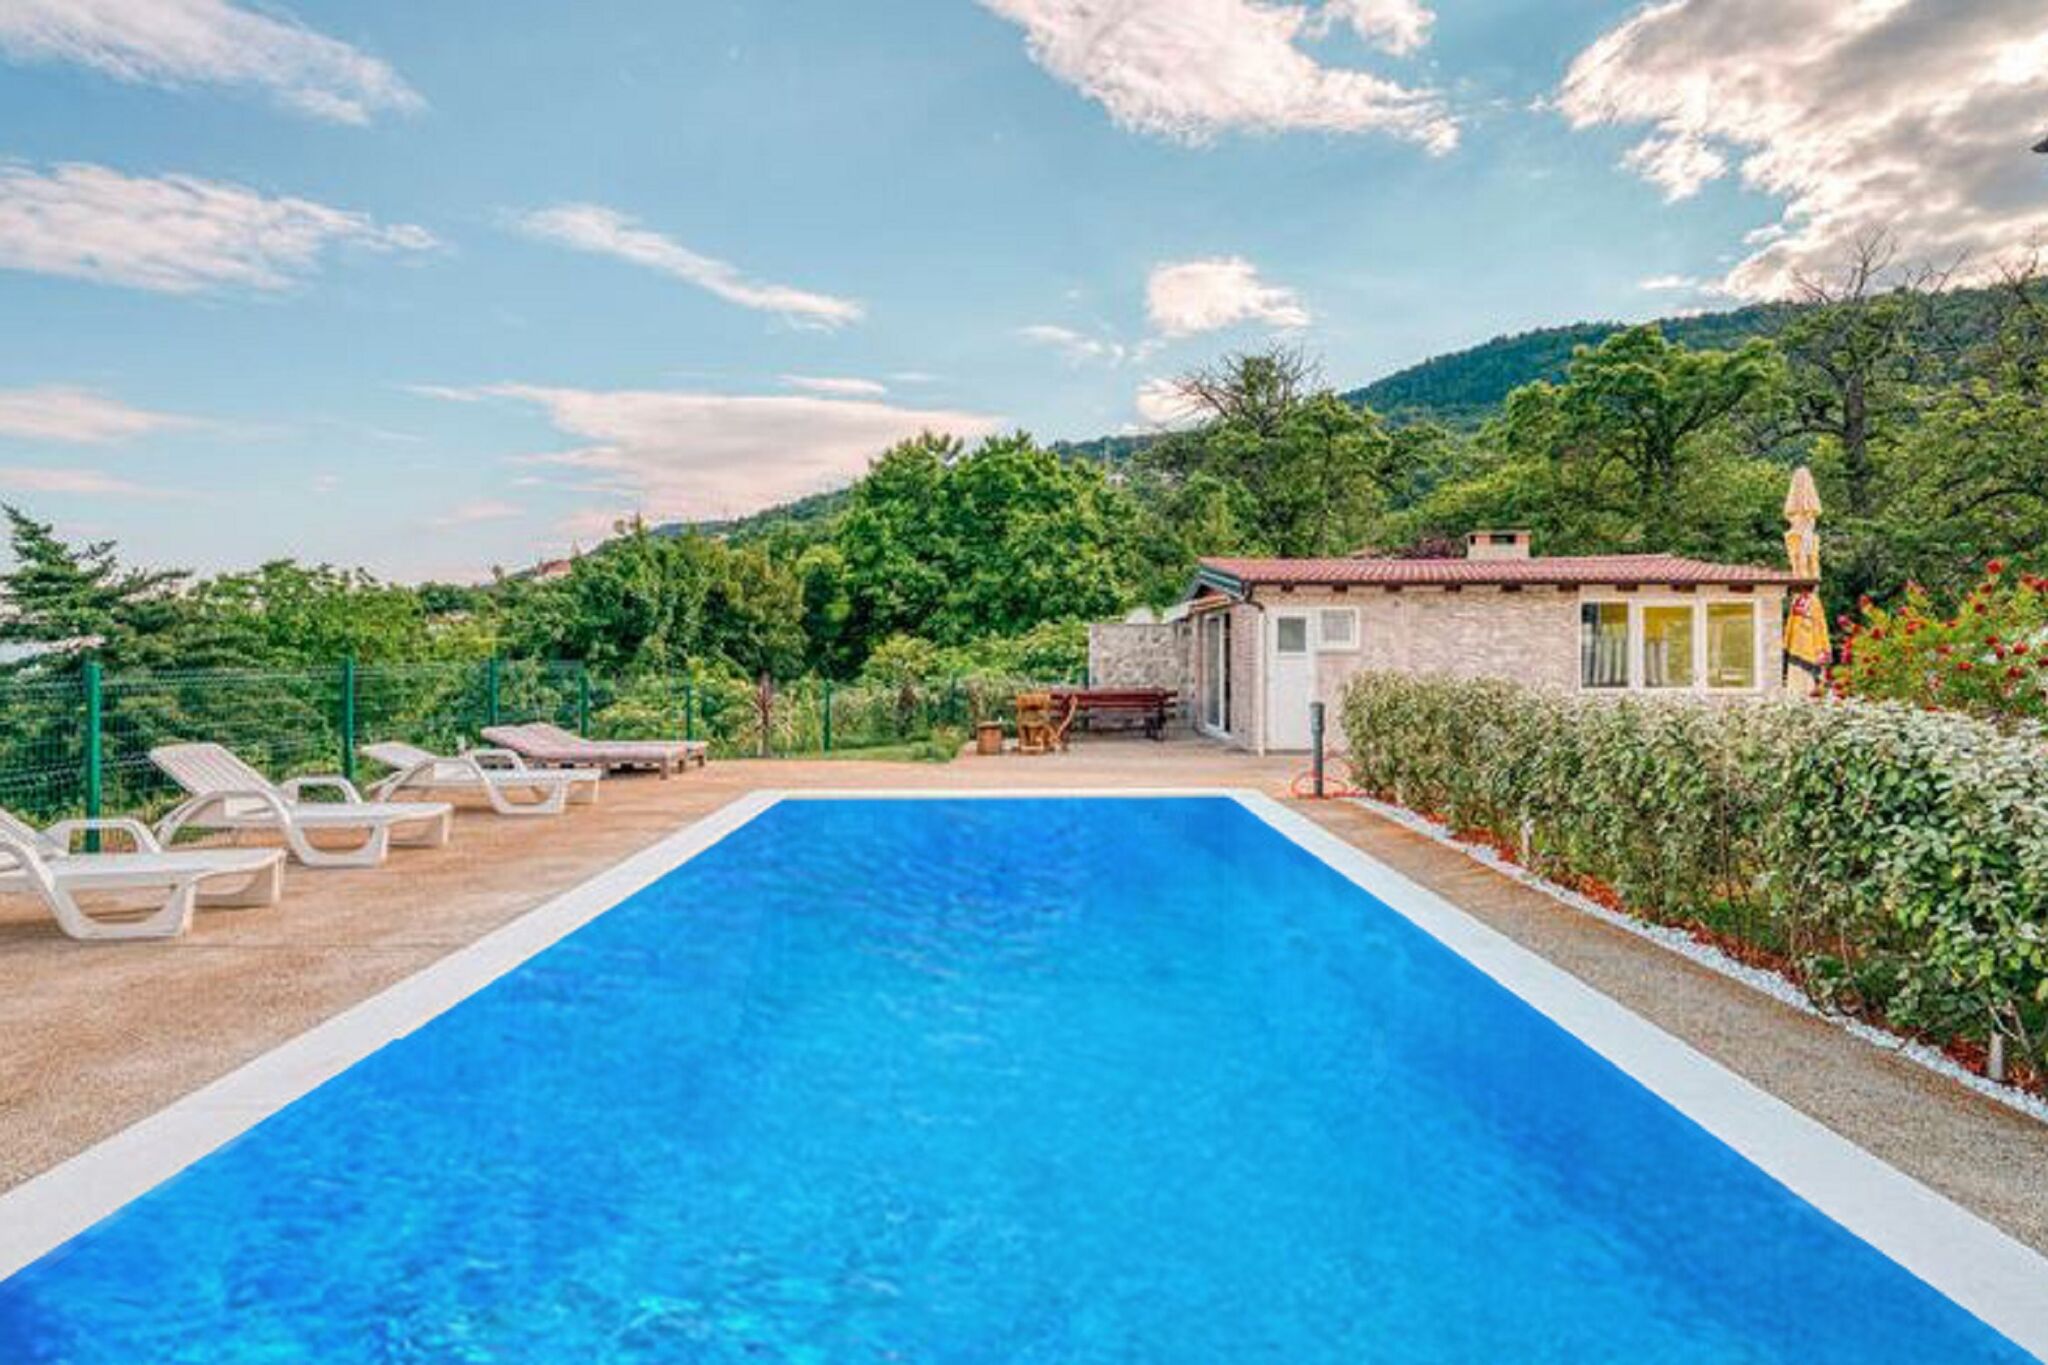 Maison de vacances simpliste à Lovran avec piscine